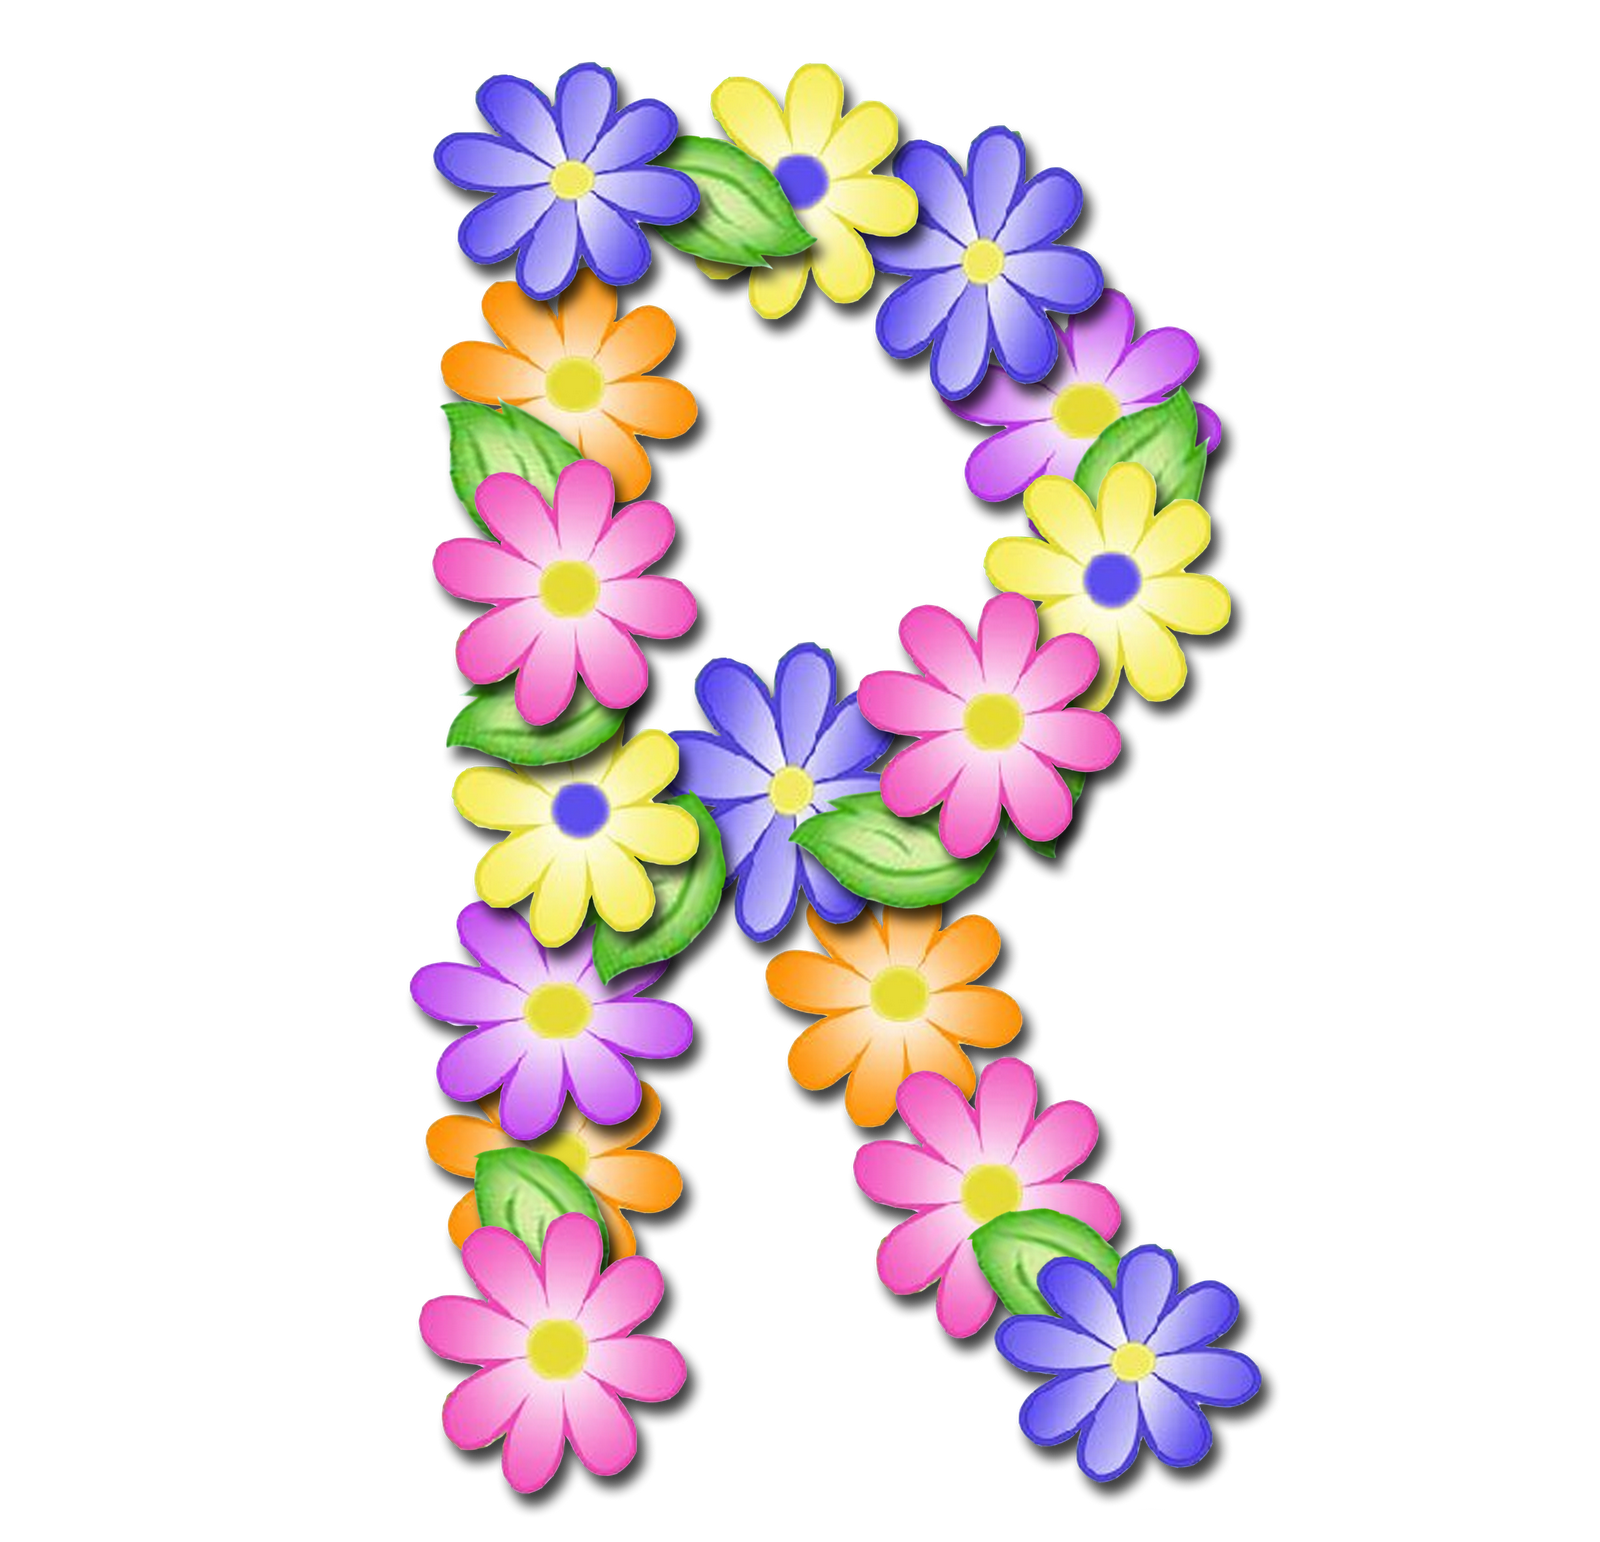 صور الحروف الإنجليزية بأجمل الزهور والورود بخلفية شفافة بنج png وجودة عالية للمصممين :: إبحث عن حروف إسمك بالإنجليزية - صفحة 2 R